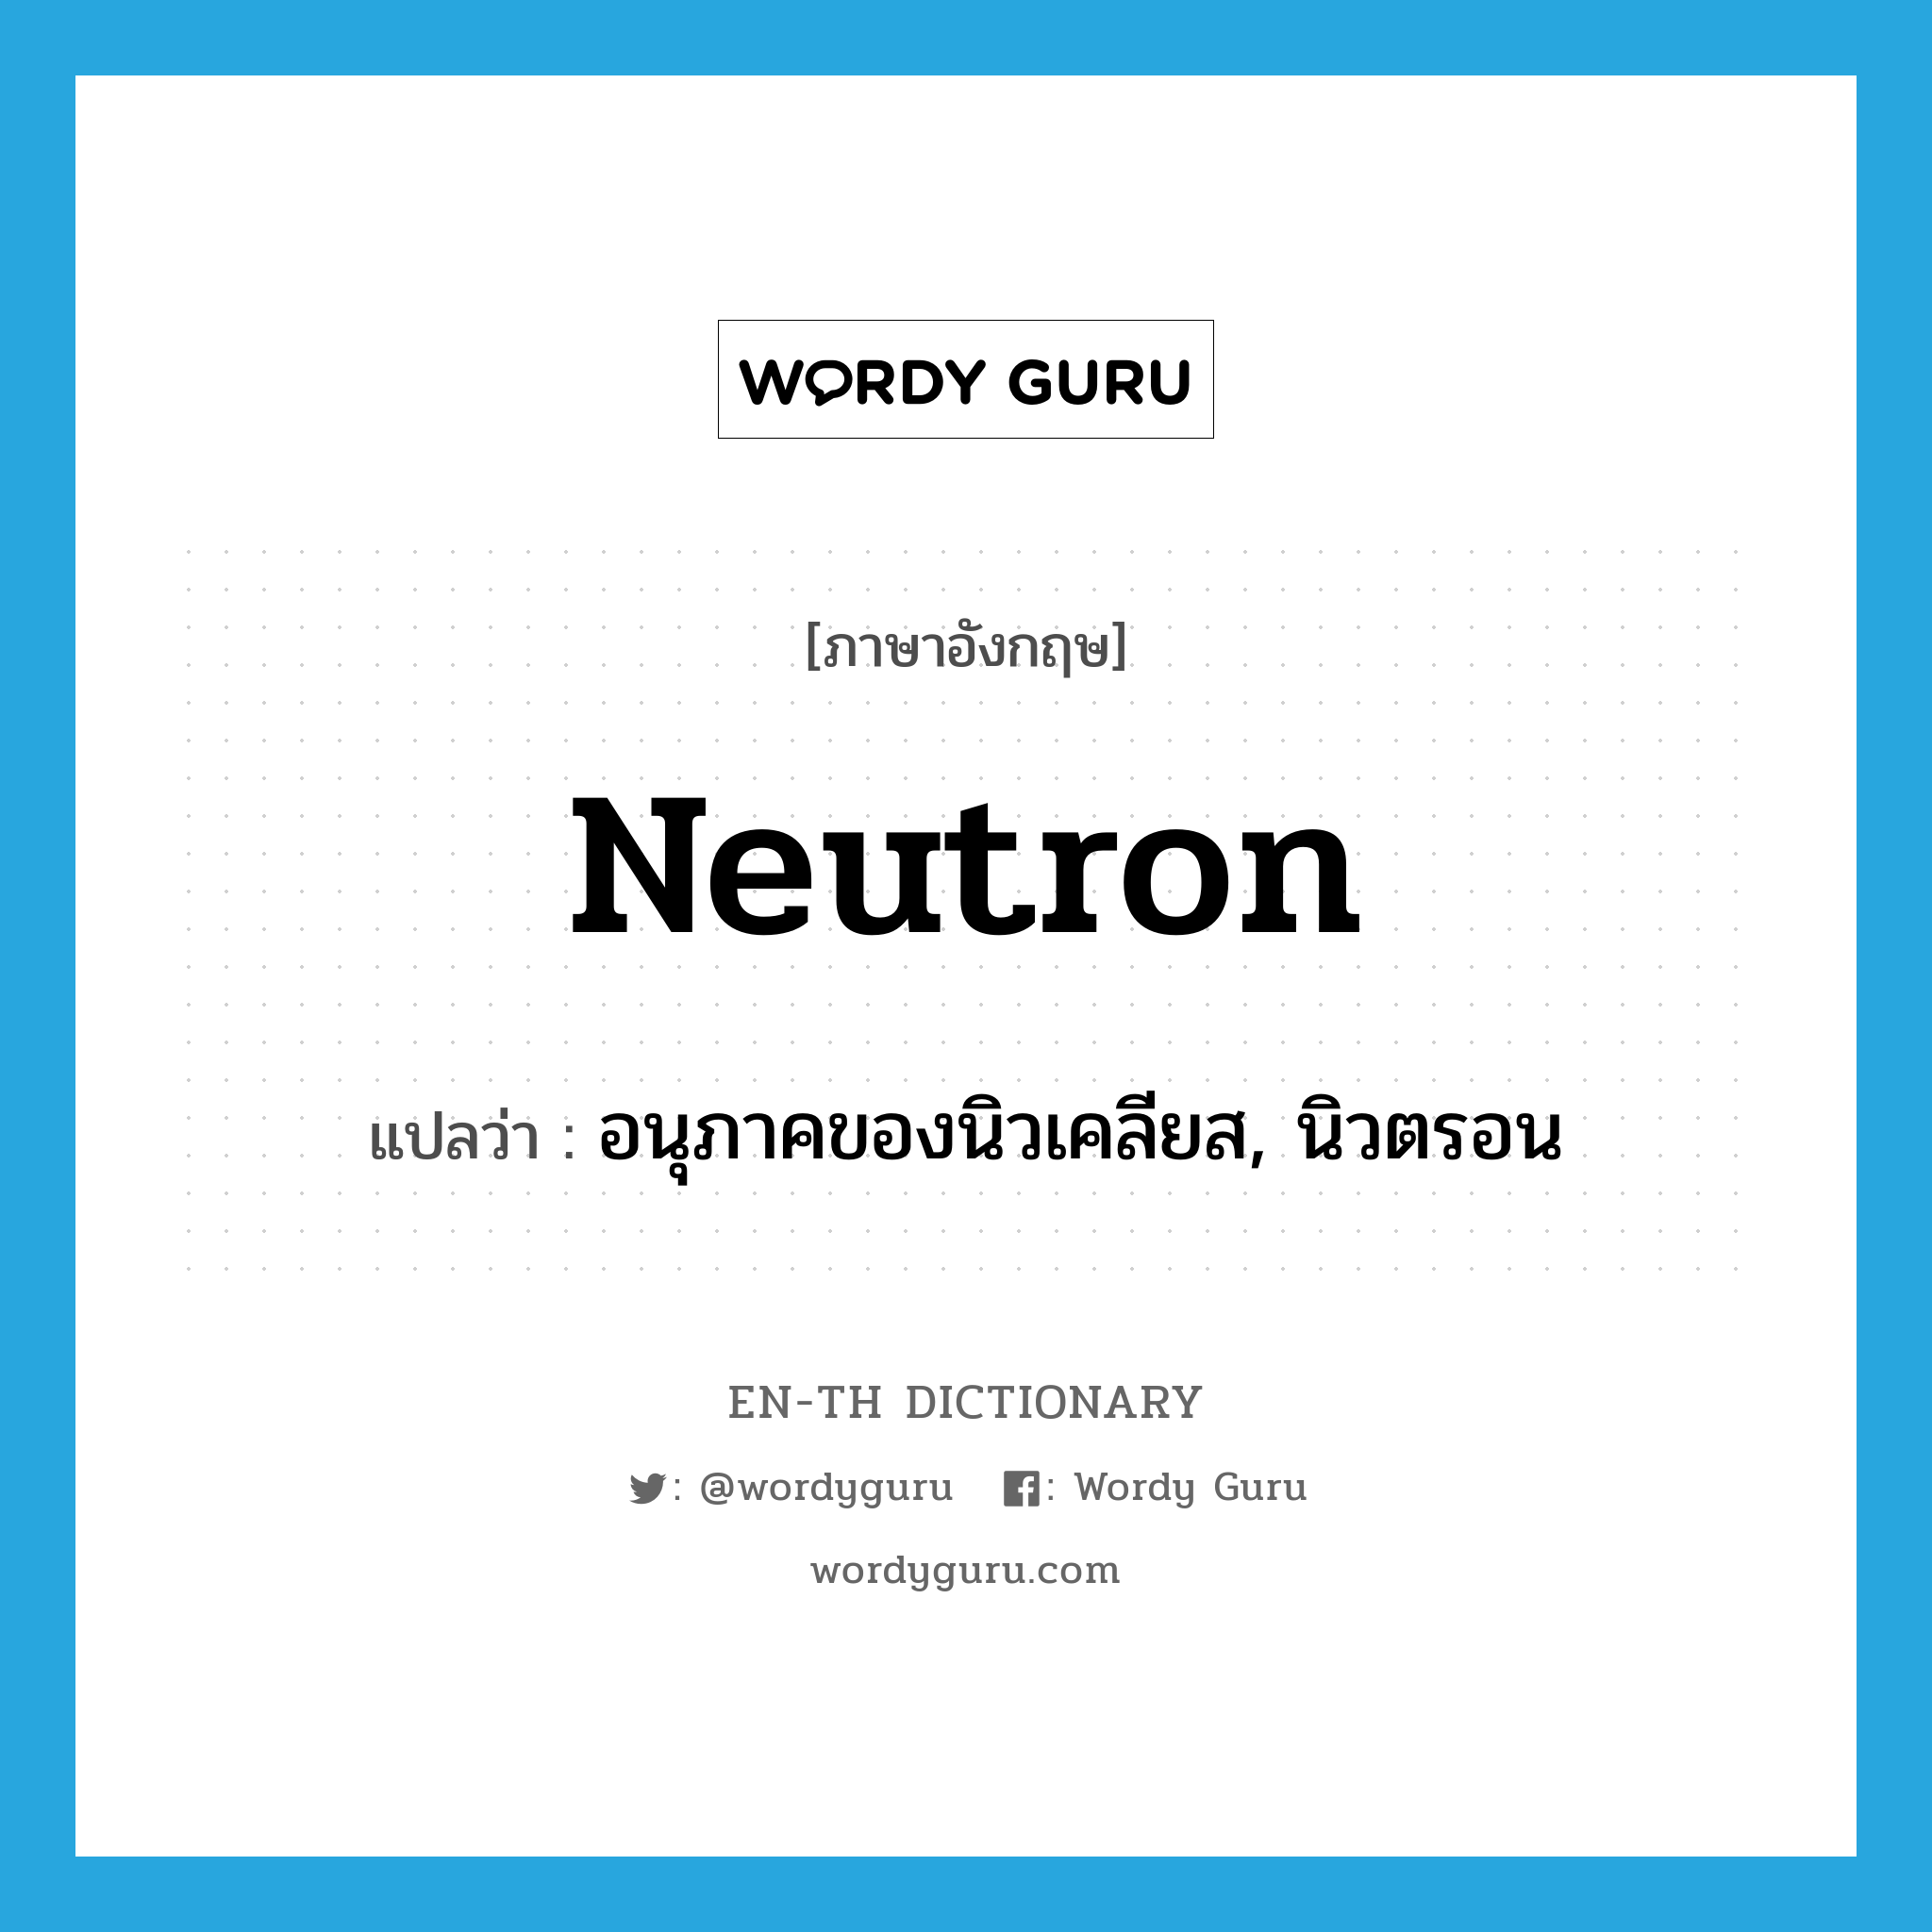 neutron แปลว่า?, คำศัพท์ภาษาอังกฤษ neutron แปลว่า อนุภาคของนิวเคลียส, นิวตรอน ประเภท N หมวด N